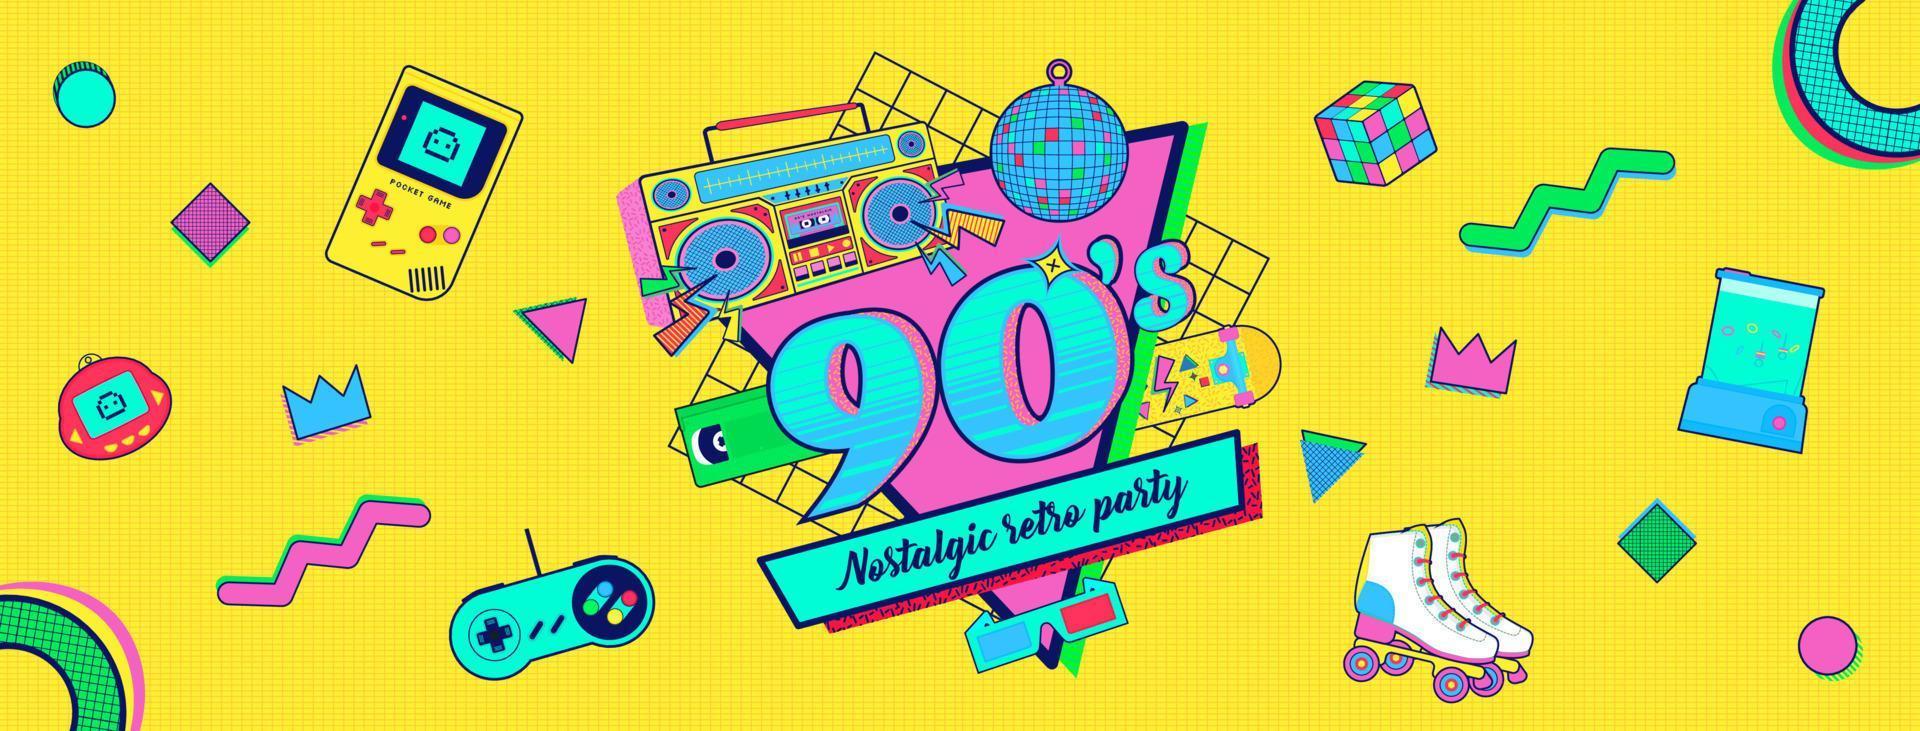 Banner de fiesta retro colorido nostálgico de memphis de los años 90 y 80 vector